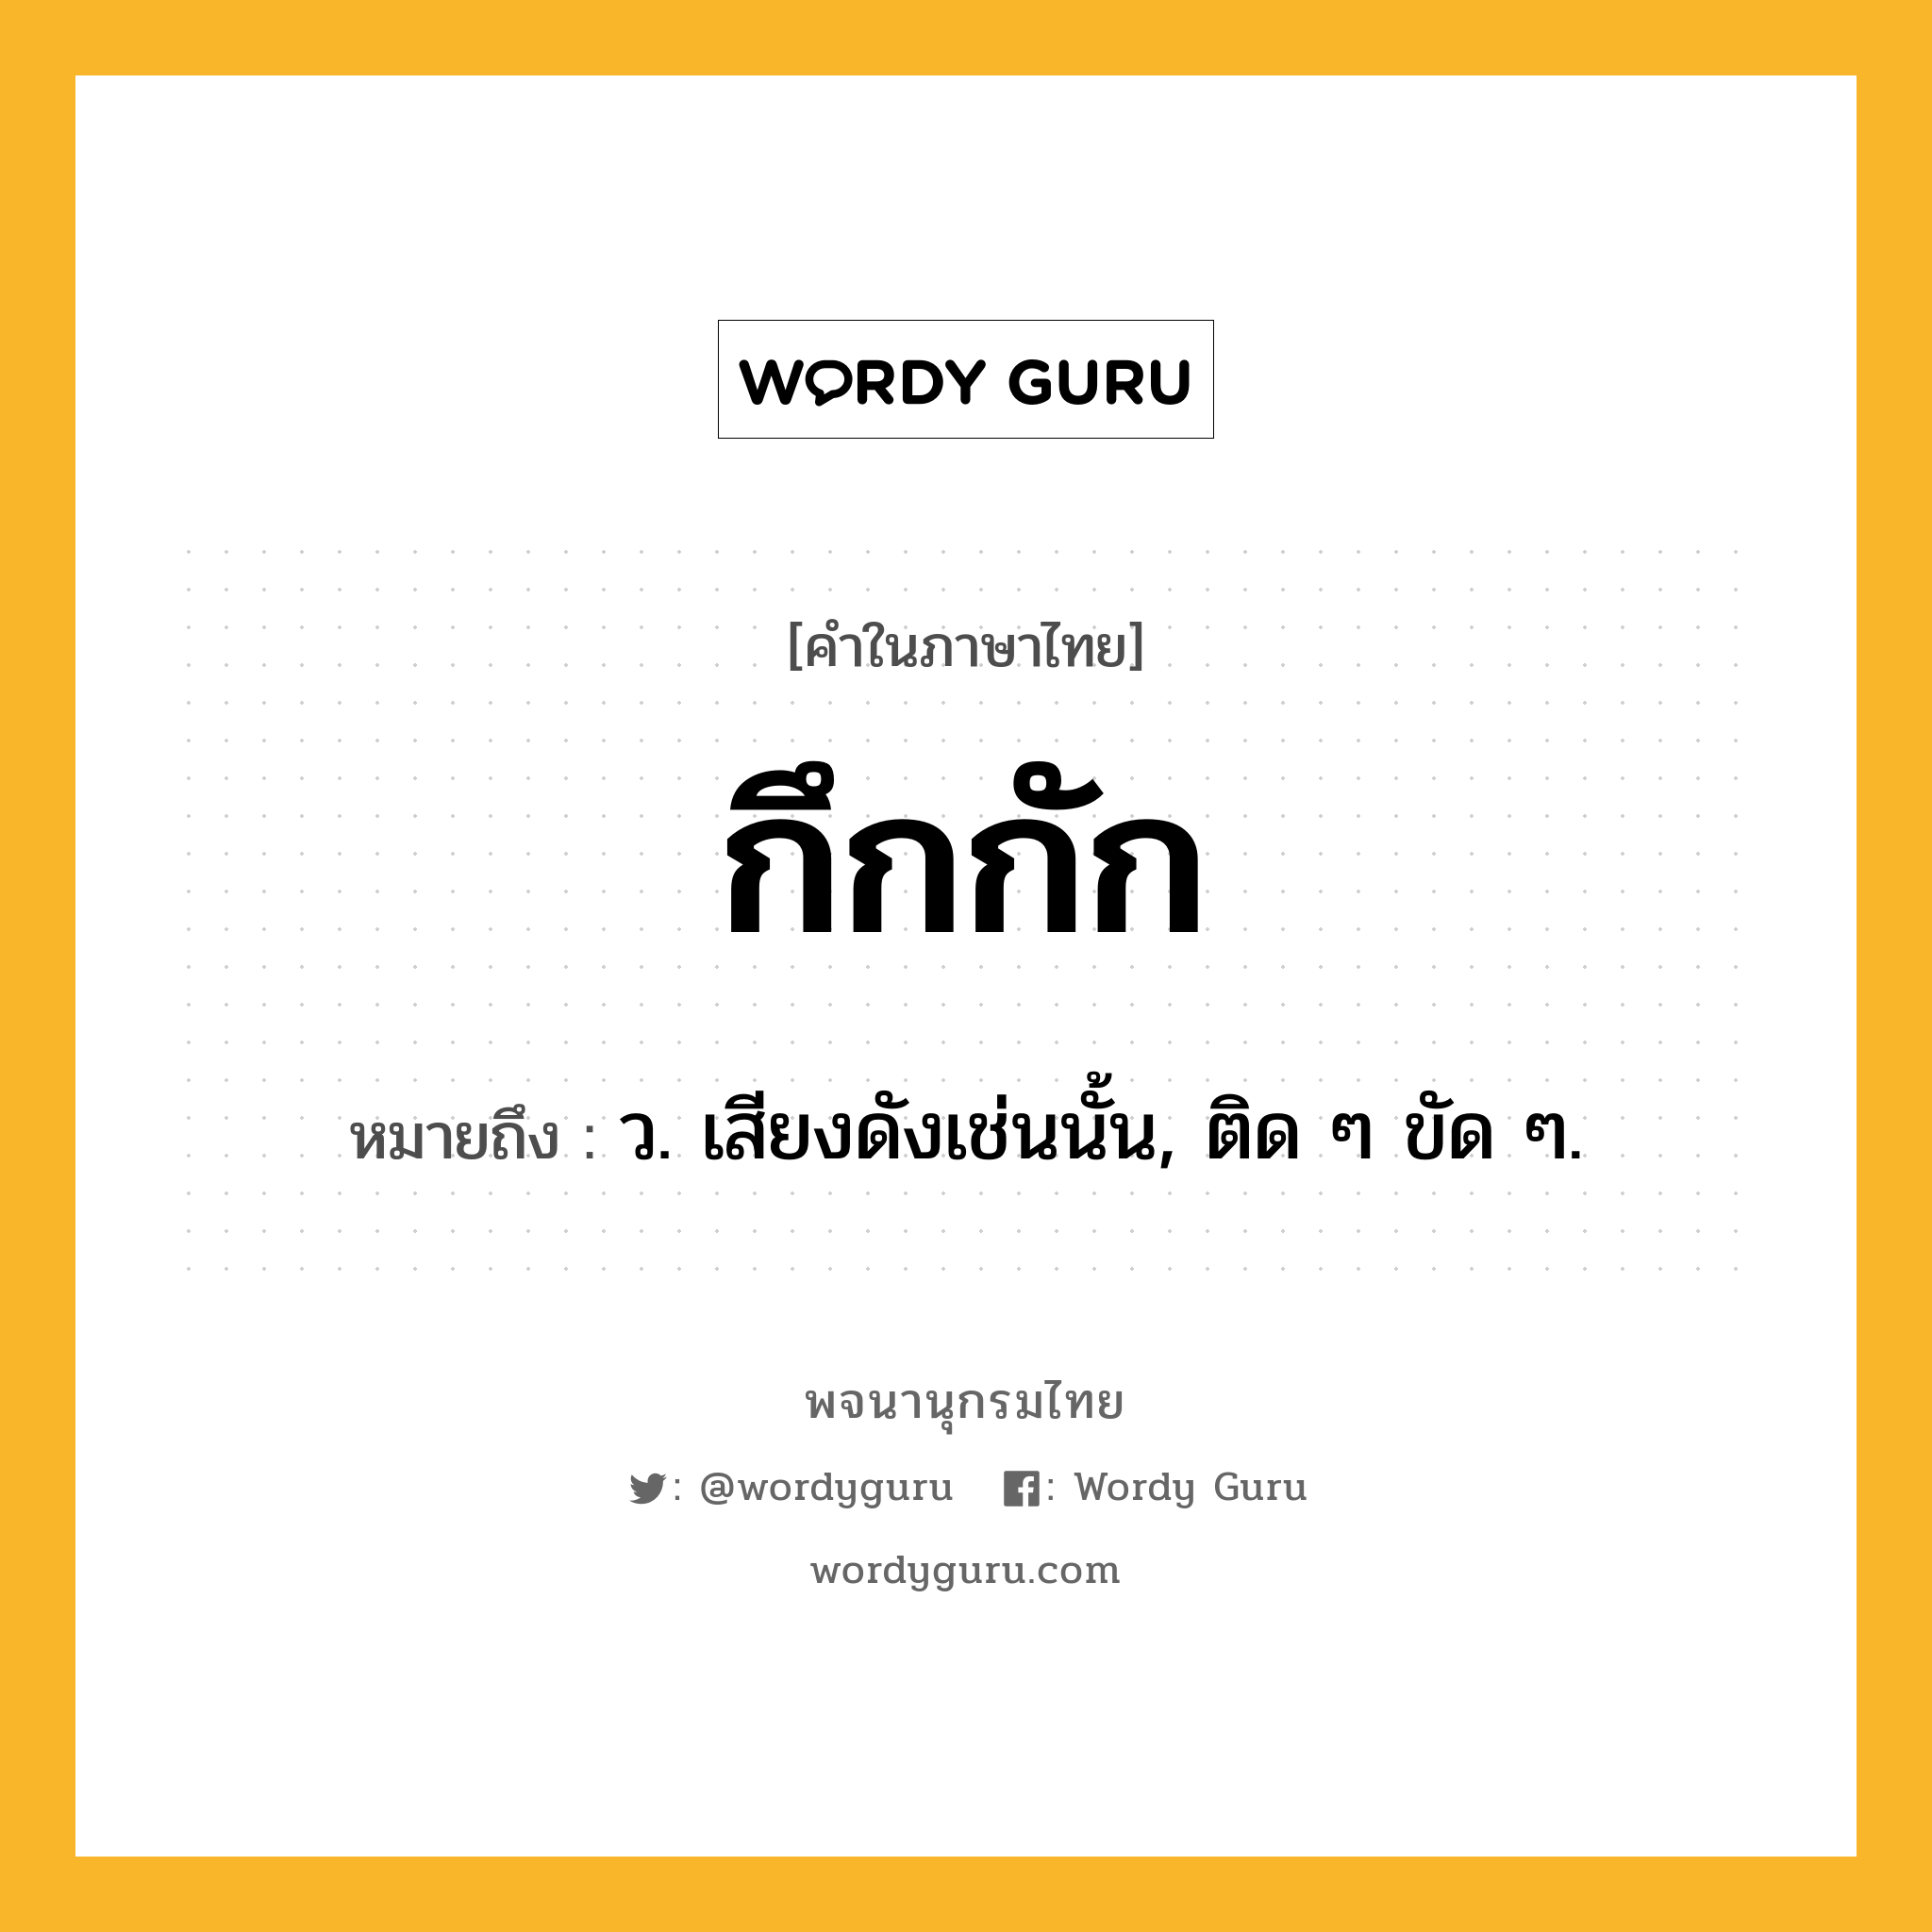 กึกกัก หมายถึงอะไร?, คำในภาษาไทย กึกกัก หมายถึง ว. เสียงดังเช่นนั้น, ติด ๆ ขัด ๆ.